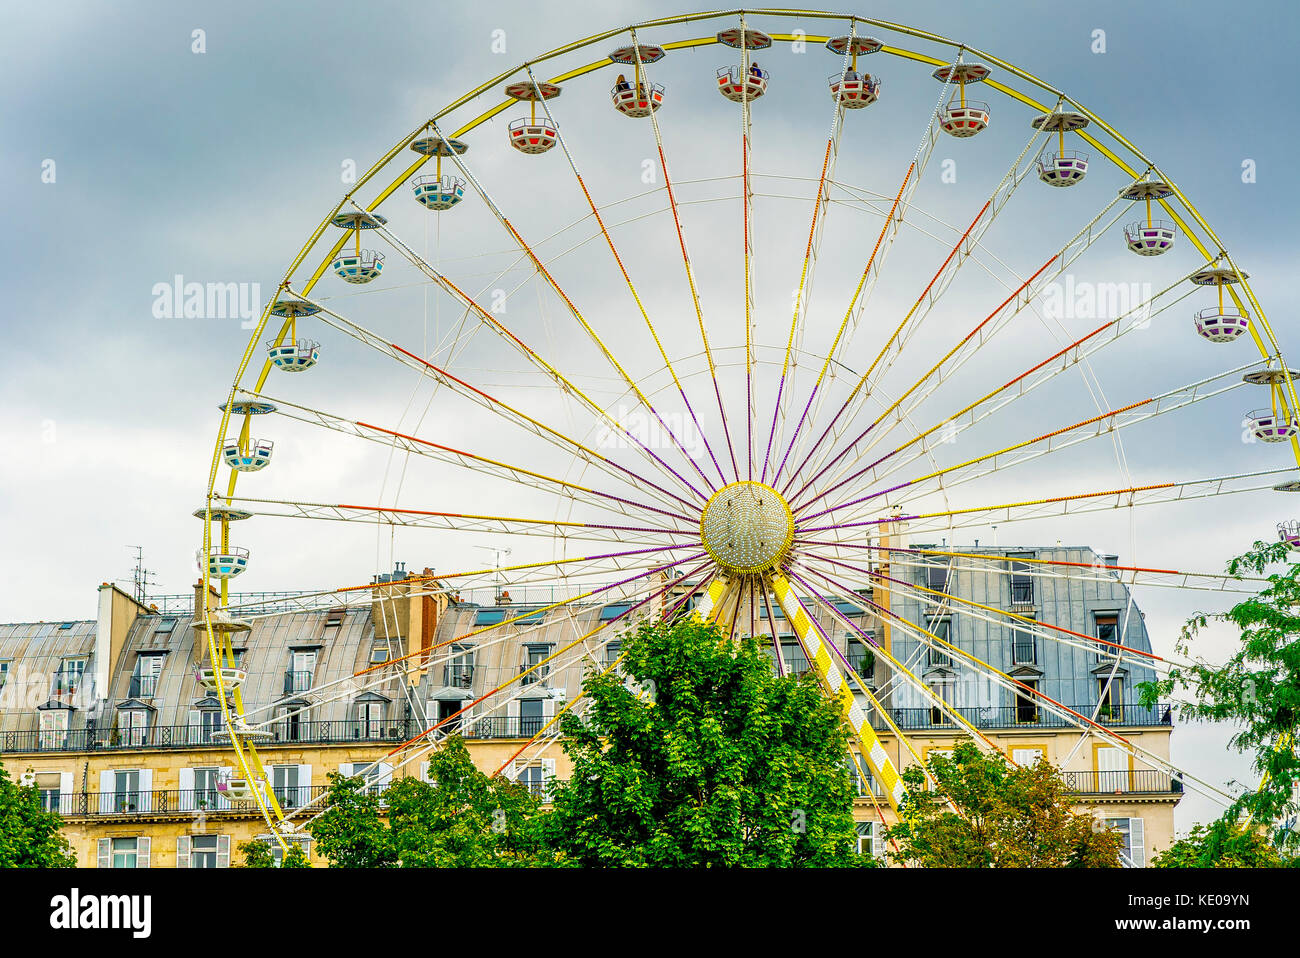 Fete de Tuileries dans le jardin des Tuileries, un jour nuageux à Paris, France Banque D'Images